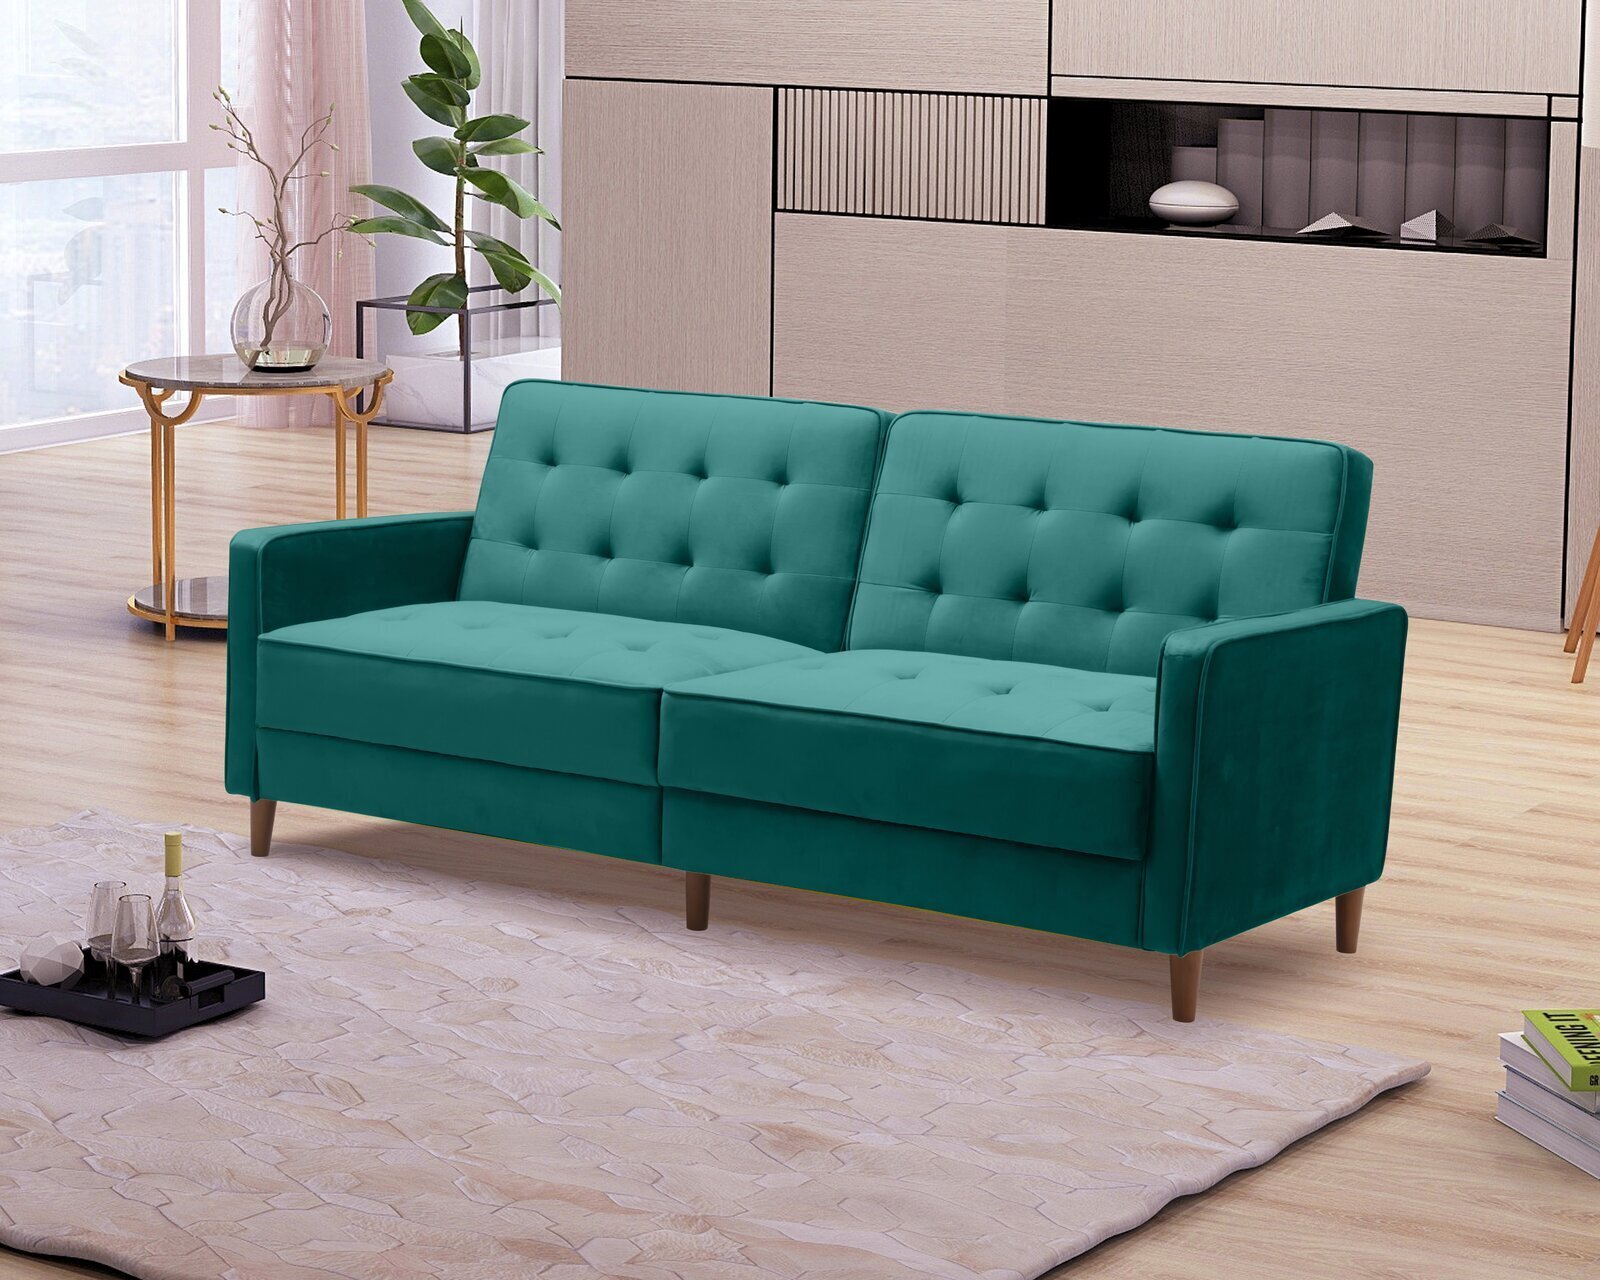 Elegant mid century modern sofa bed with velvet upholstery